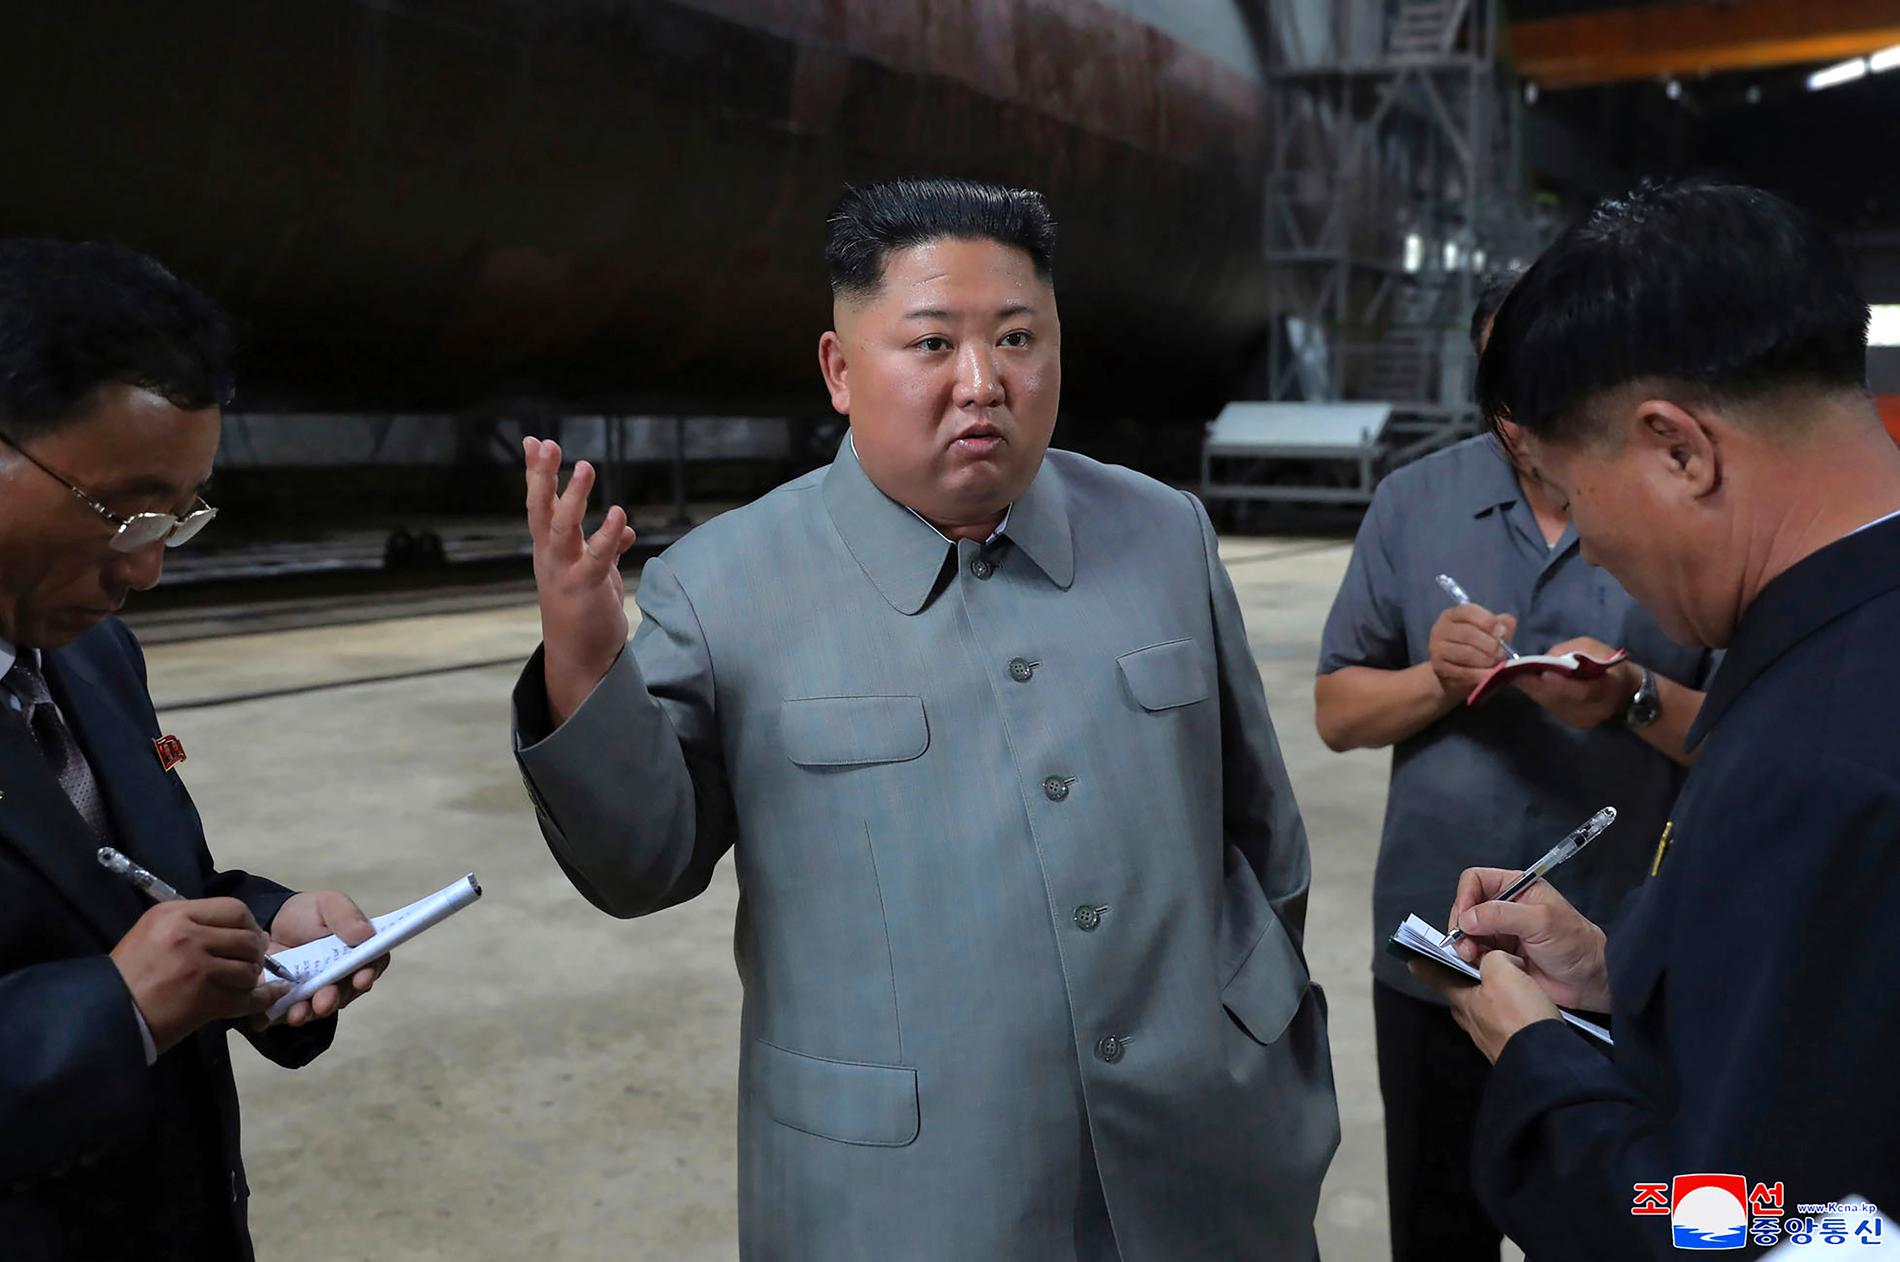 Nordkoreas diktator Kim Jong-Un syns inspektera bygget av en ny ubåt. Den odaterade bilden släpptes av regimen den 23 juli i år.